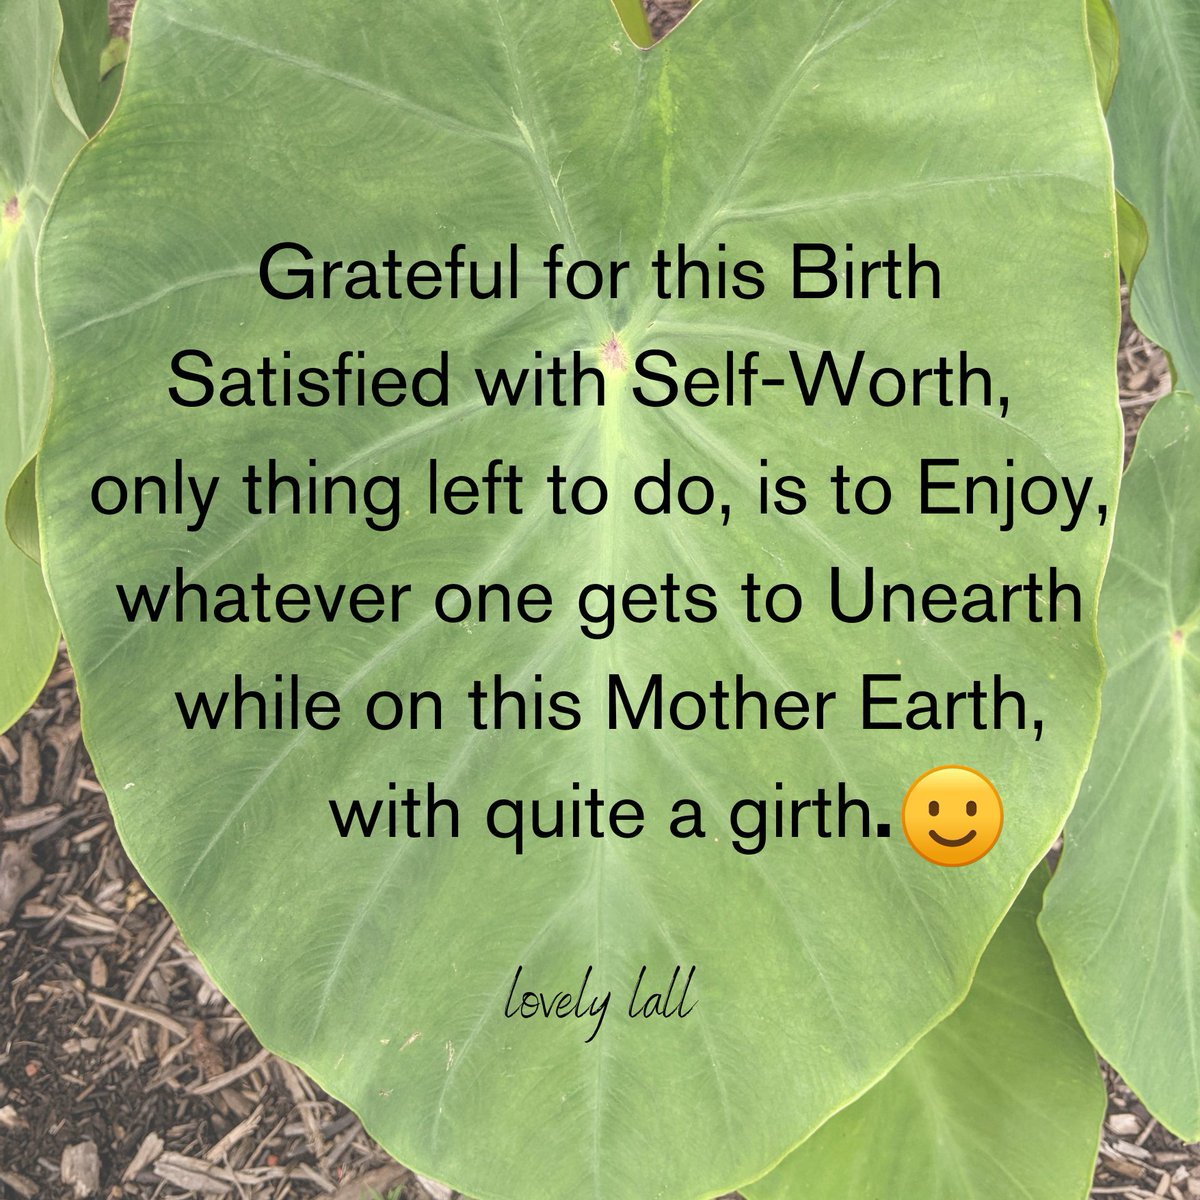 #grateful#selfworthjourney #unearth
#motherearth#selfworthcoach #selfworthquotes
#selfworthjourney #enjoylife #enjoyyourday